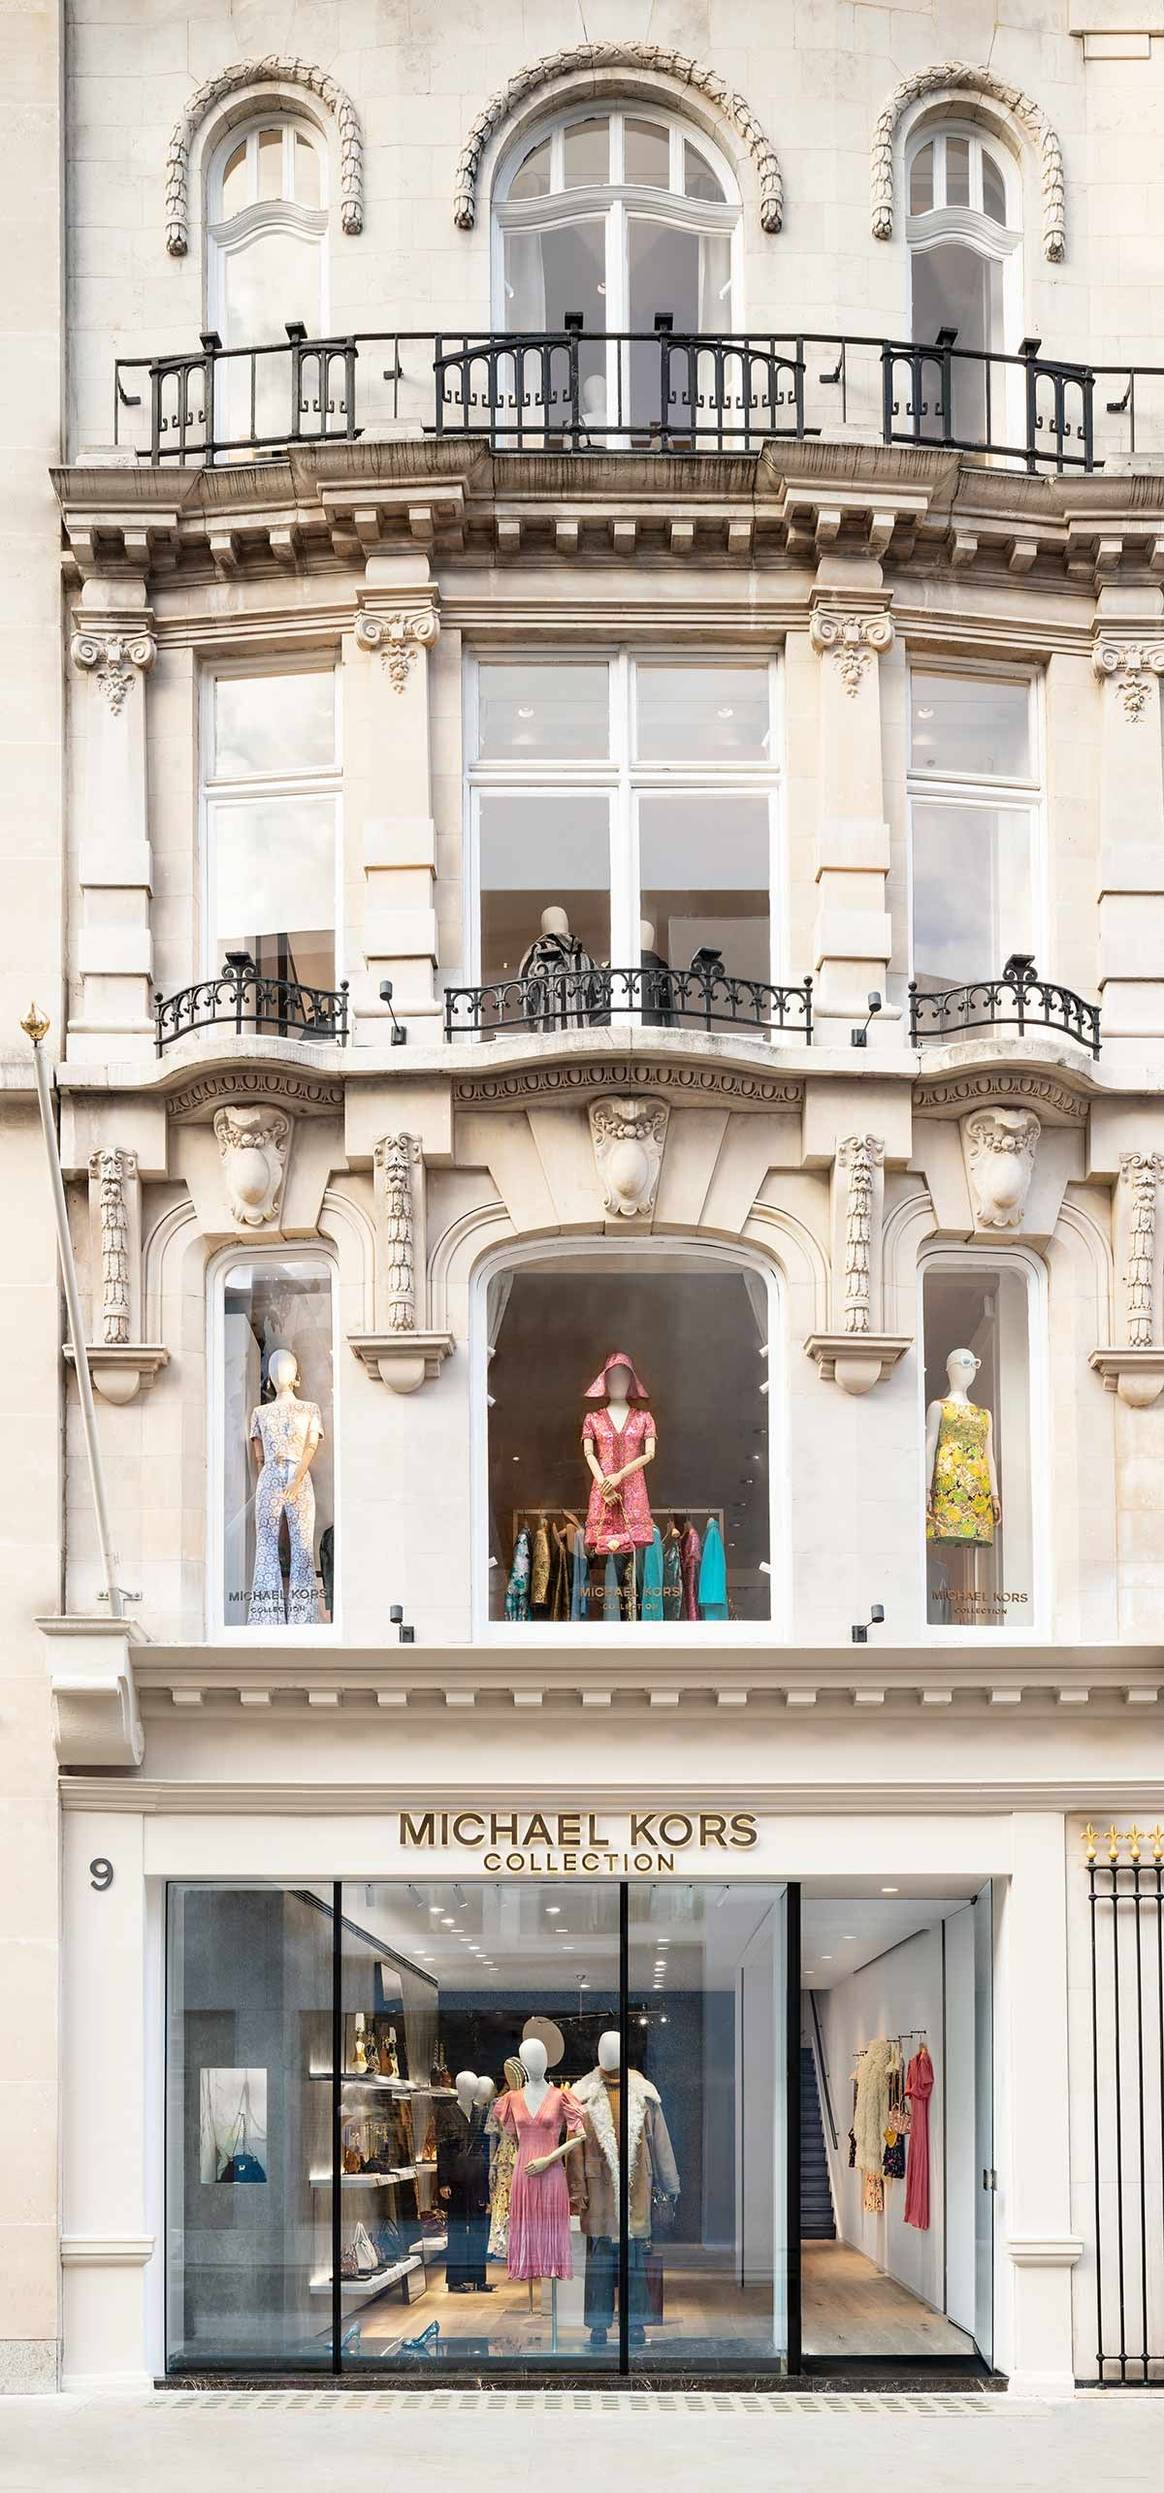 En images : Michael Kors ouvre une boutique sur Old Bond Street